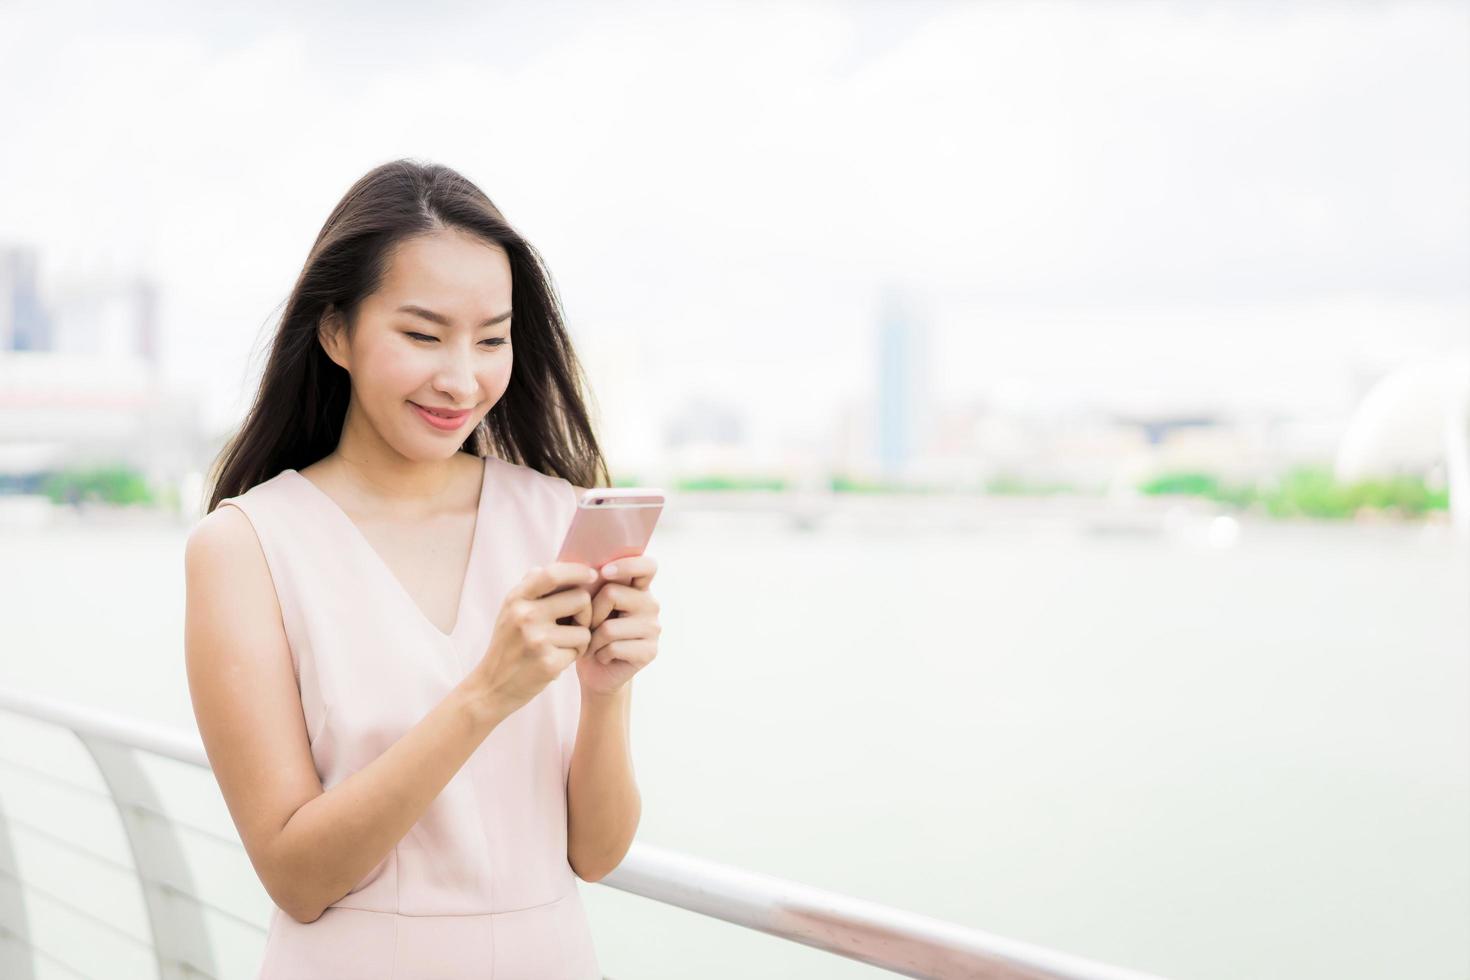 Aziatische vrouw die smartphone of mobiele telefoon gebruikt om te praten of te sms'en foto